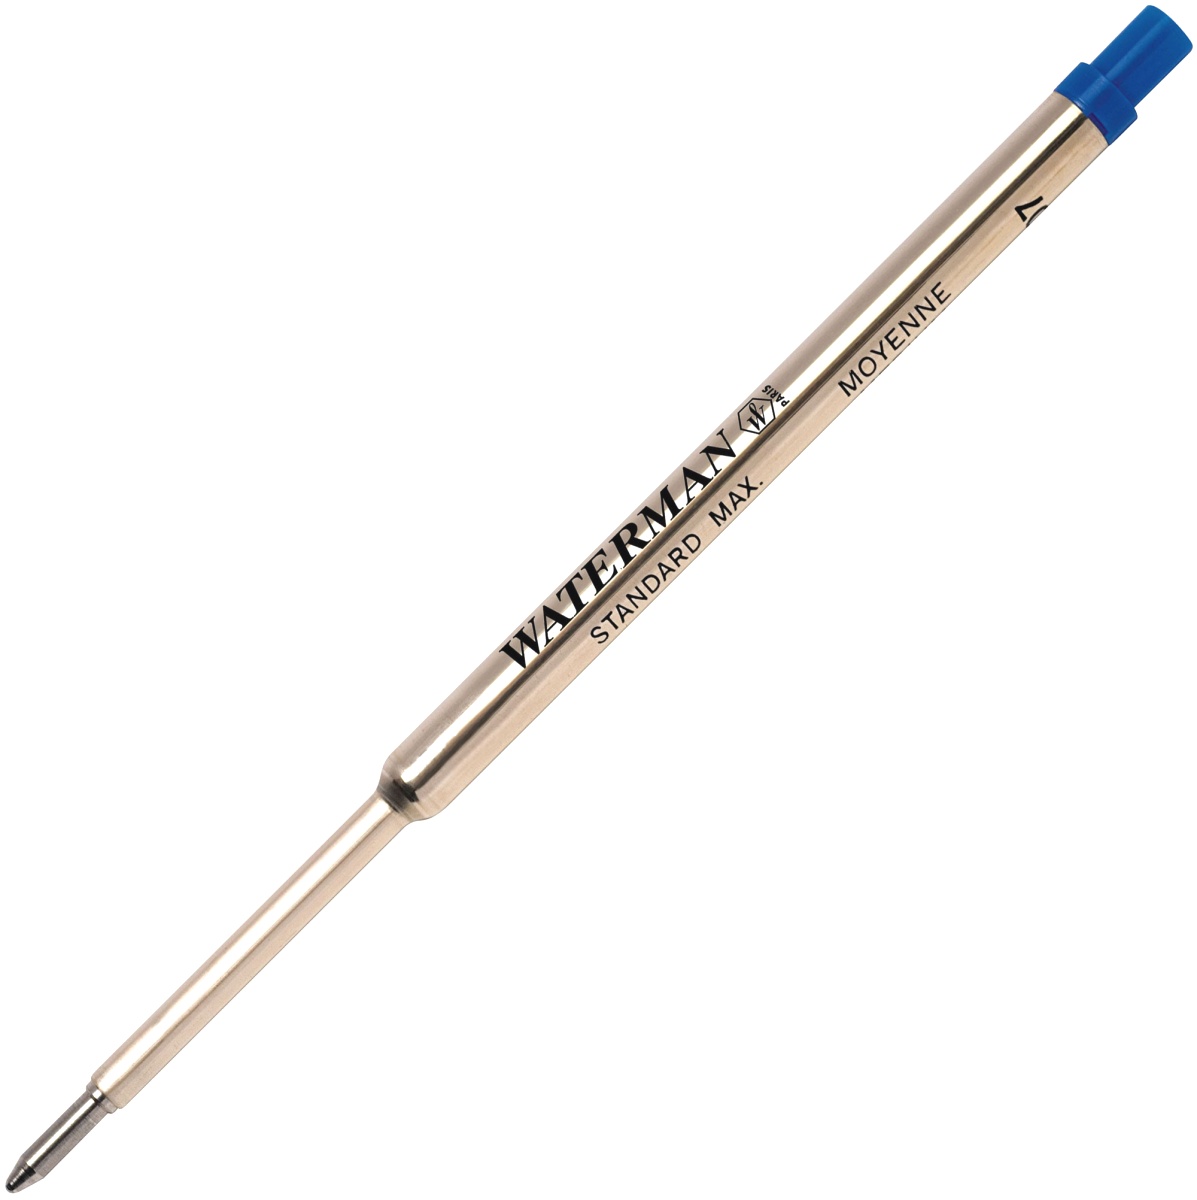  Синий стержень для шариковой ручки Waterman Refill BP Standard Maxima (F - 0.8мм), фото 2